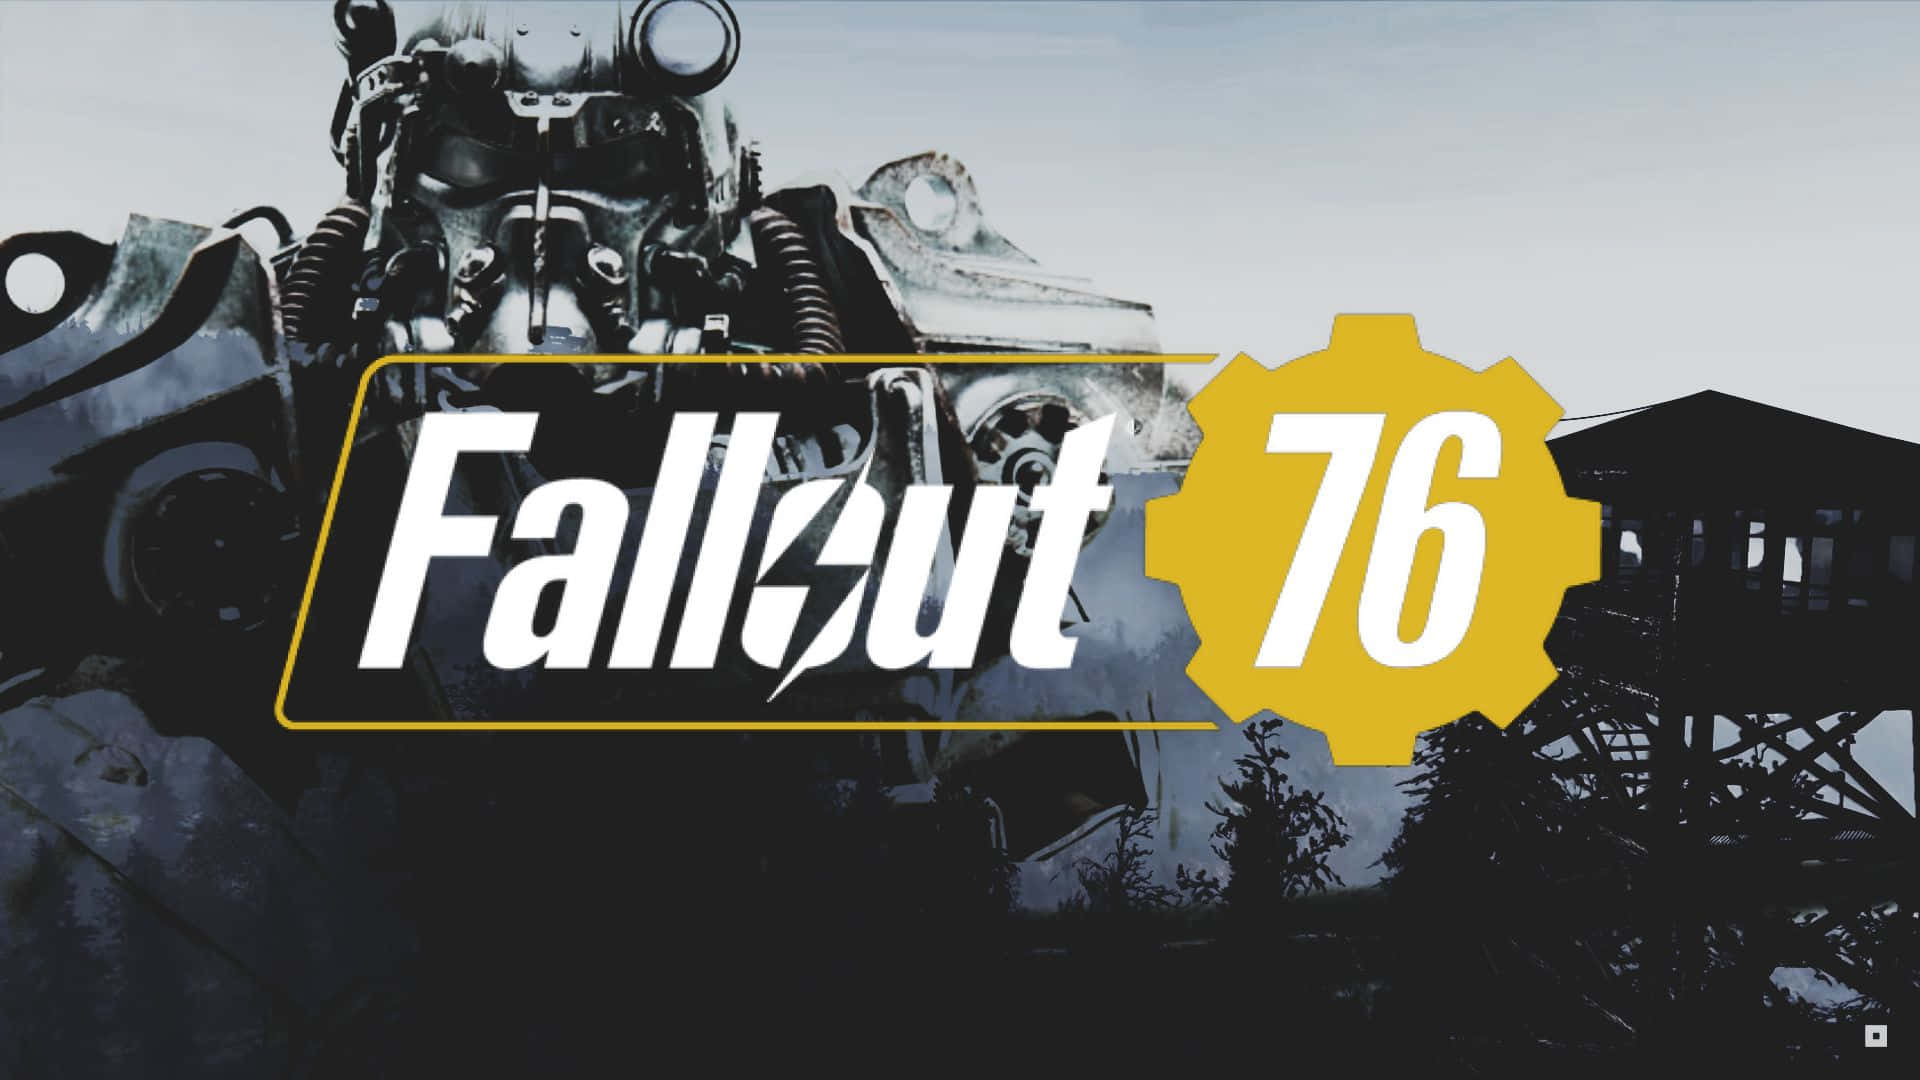 Fondode Pantalla De Fallout 76.